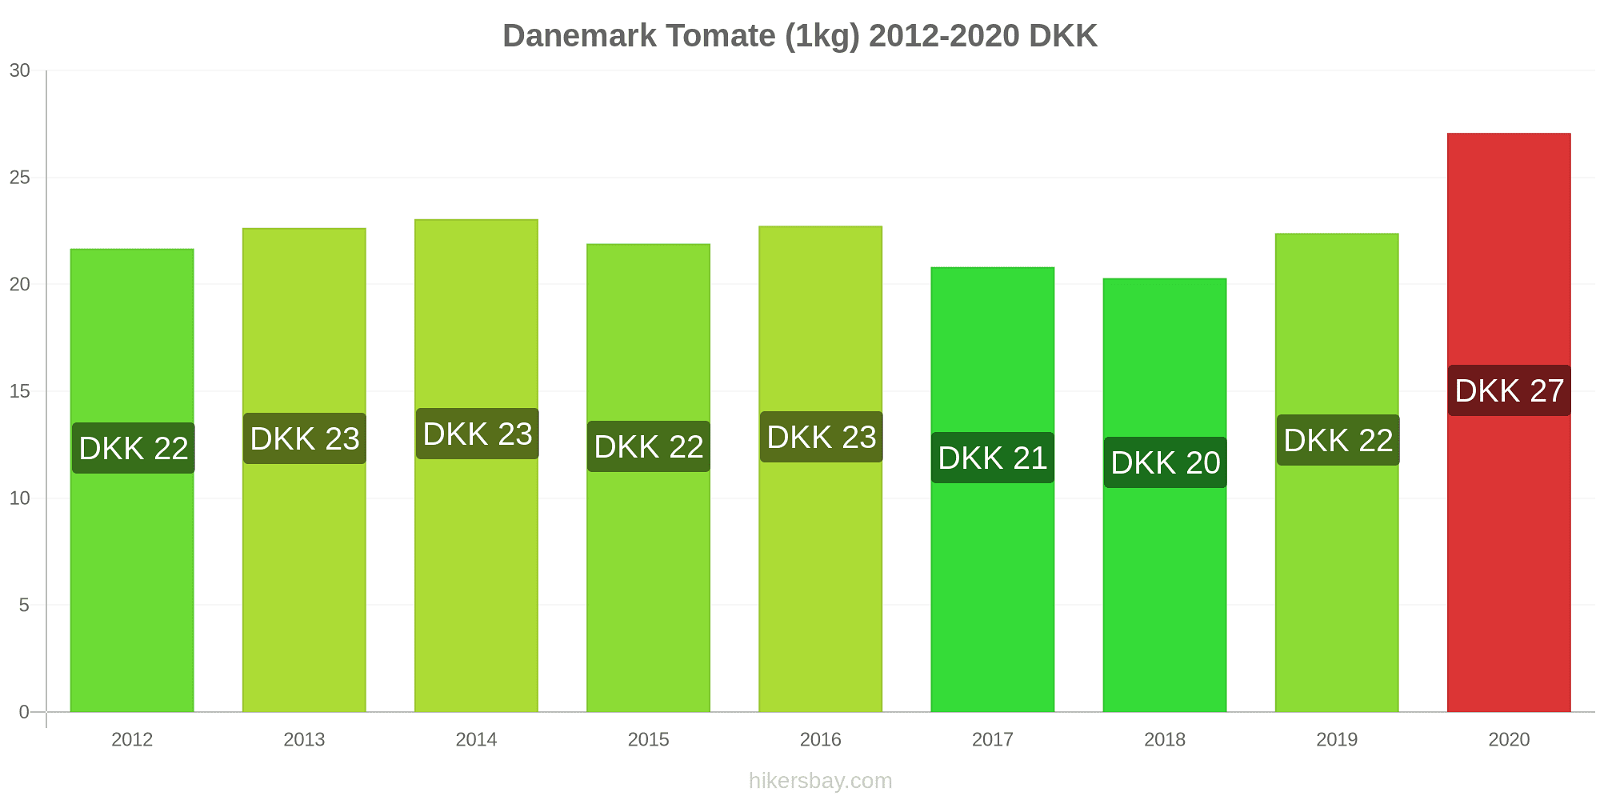 Danemark changements de prix Tomate (1kg) hikersbay.com